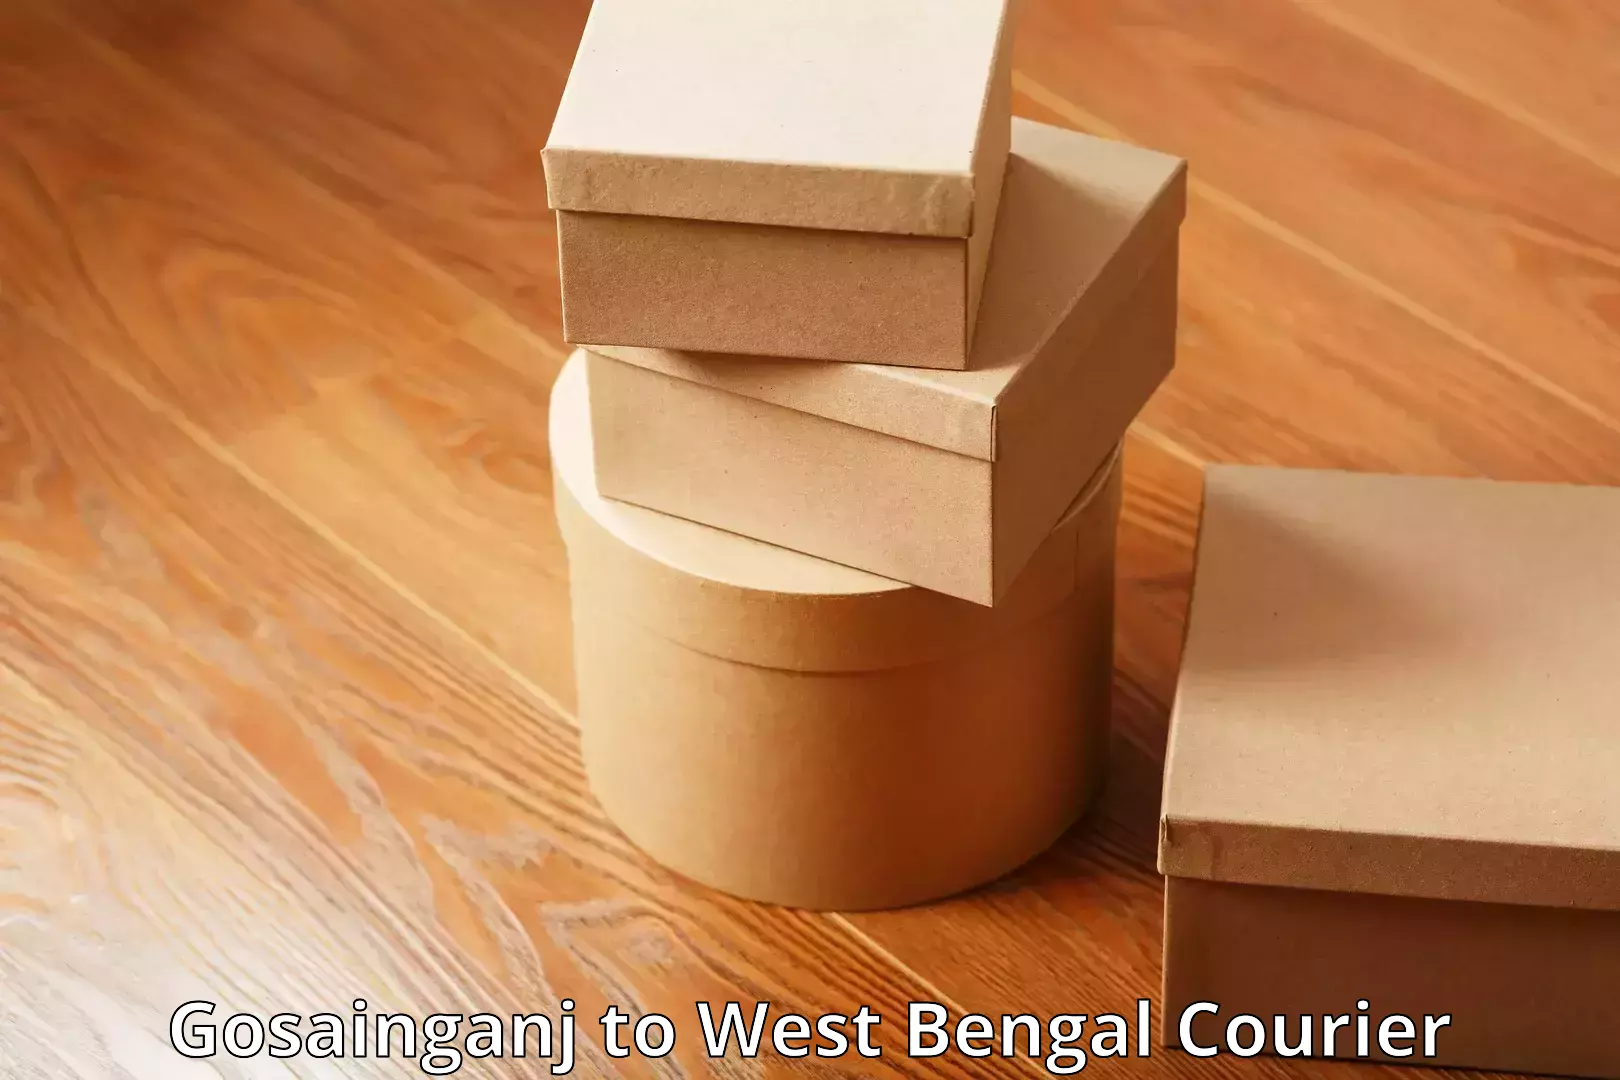 Baggage shipping advice Gosainganj to West Bengal